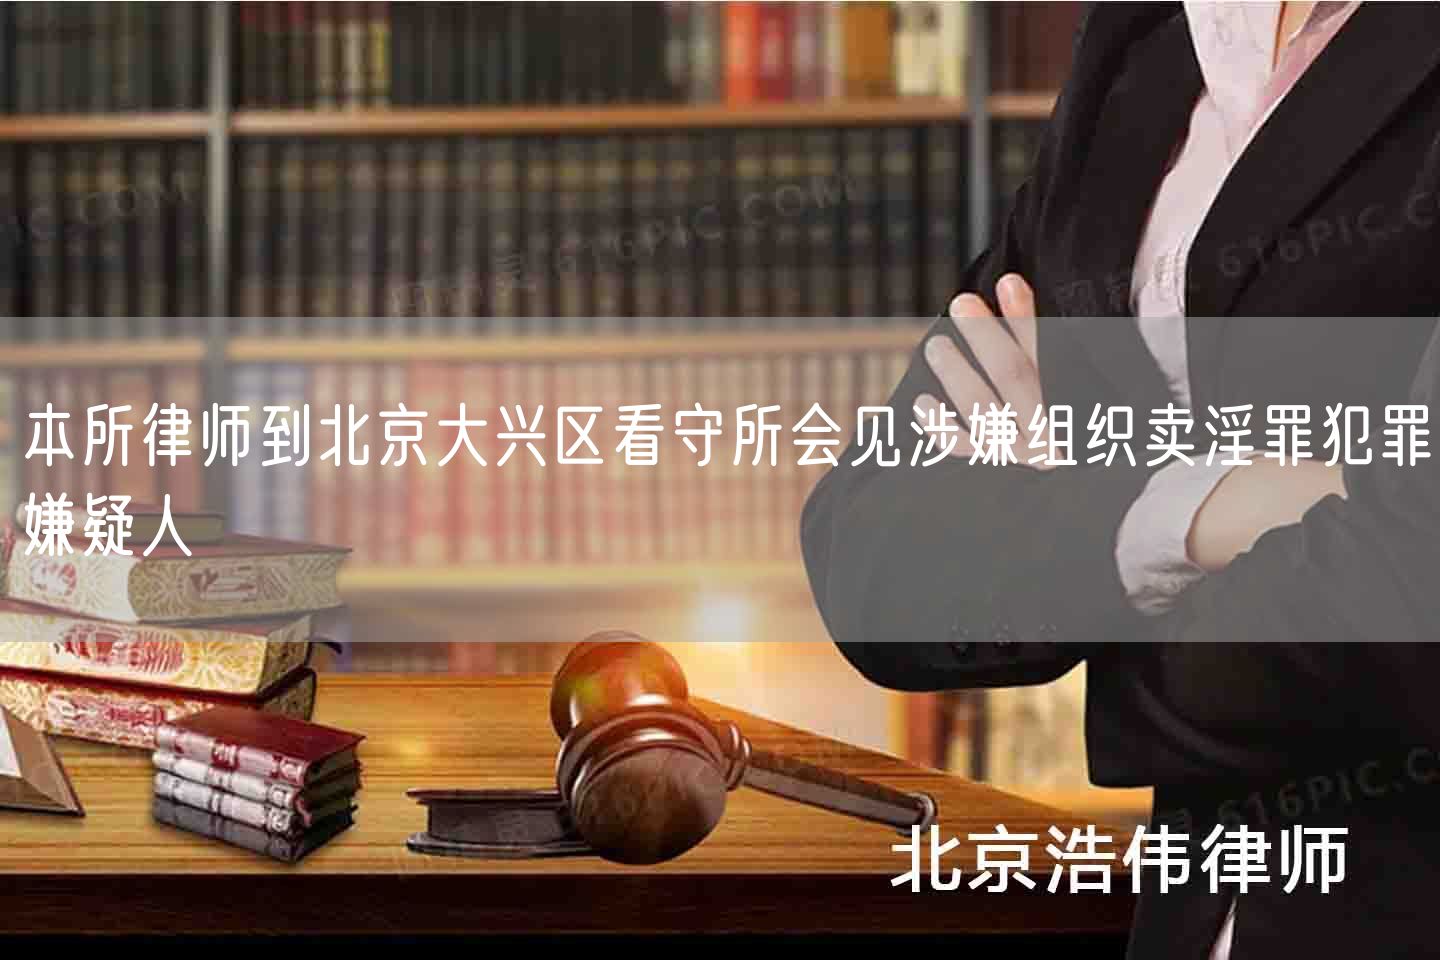 本所律师到北京大兴区看守所会见涉嫌组织卖淫罪犯罪嫌疑人